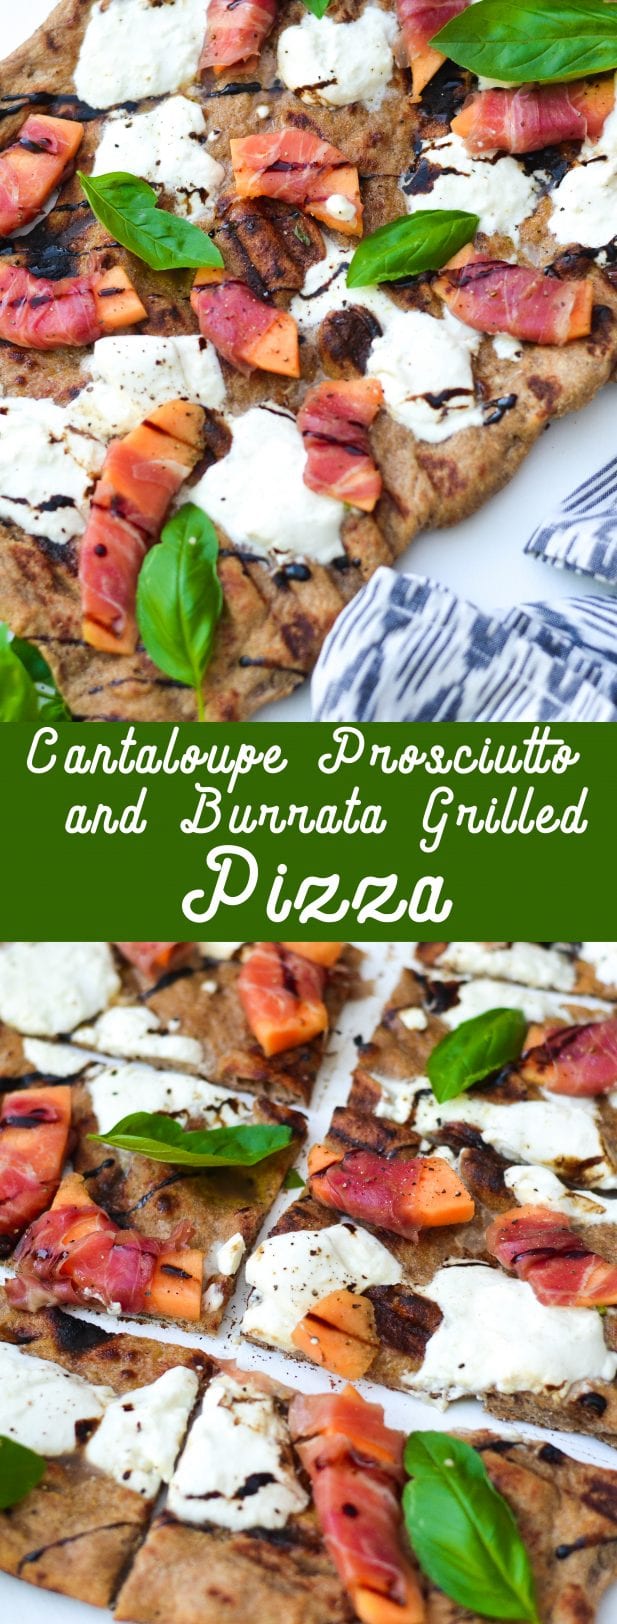 Cantaloupe, Prosciutto, and Burrata Grilled Pizza